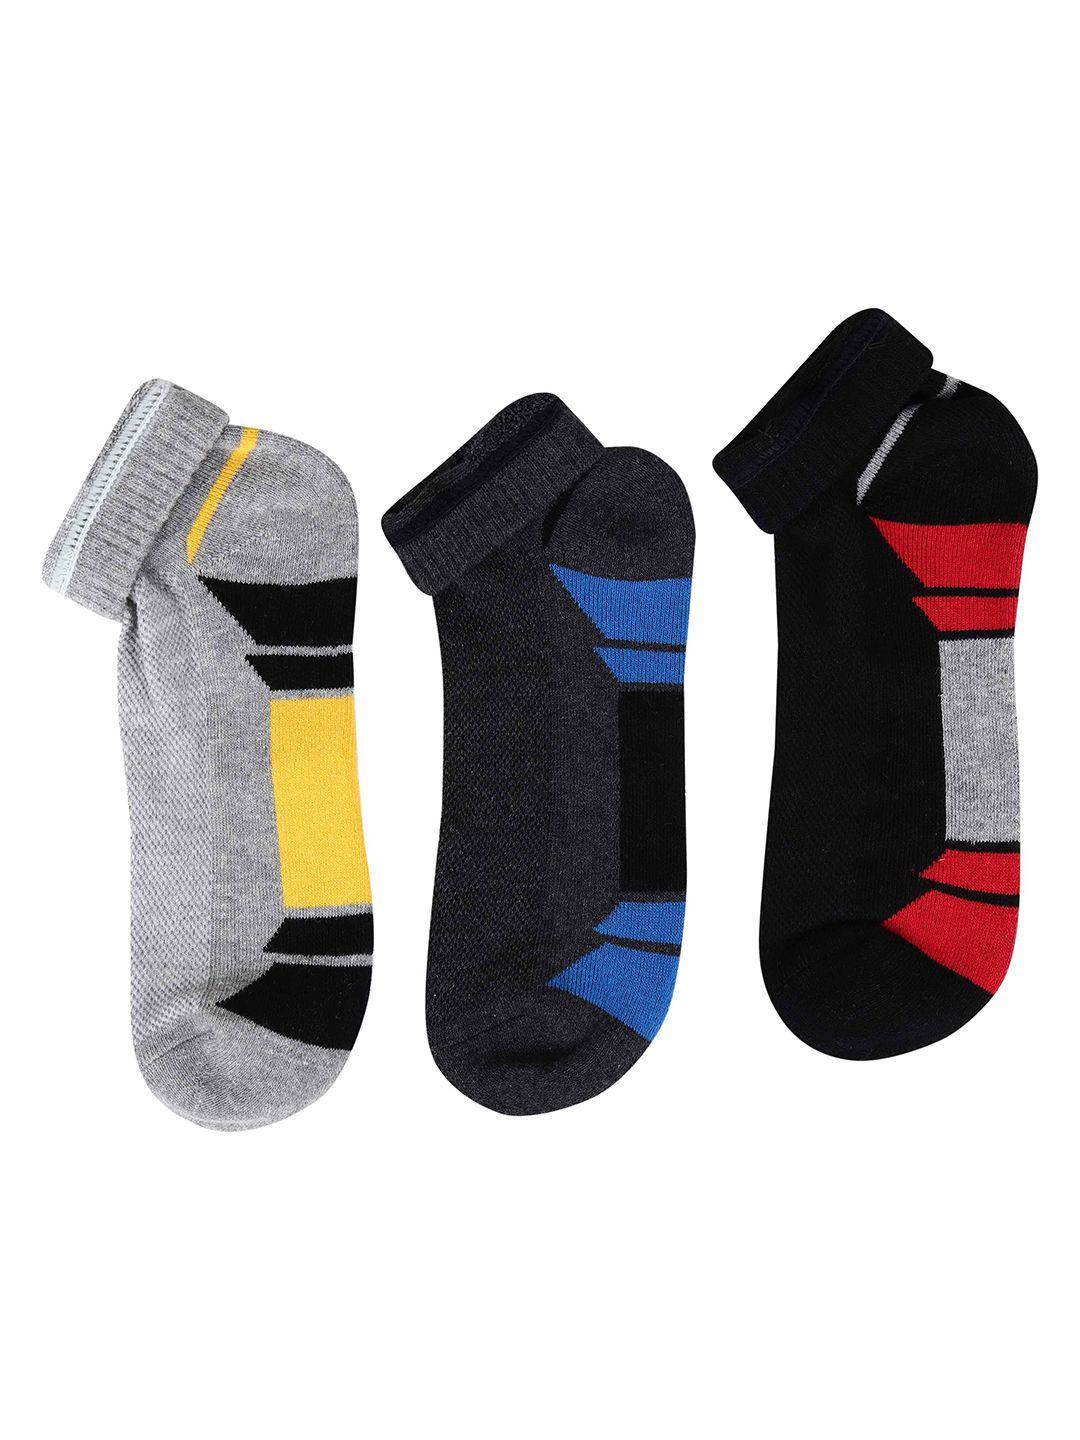 hrx by hrithik roshan unisex black & grey pack of 3 patterned ankle length socks